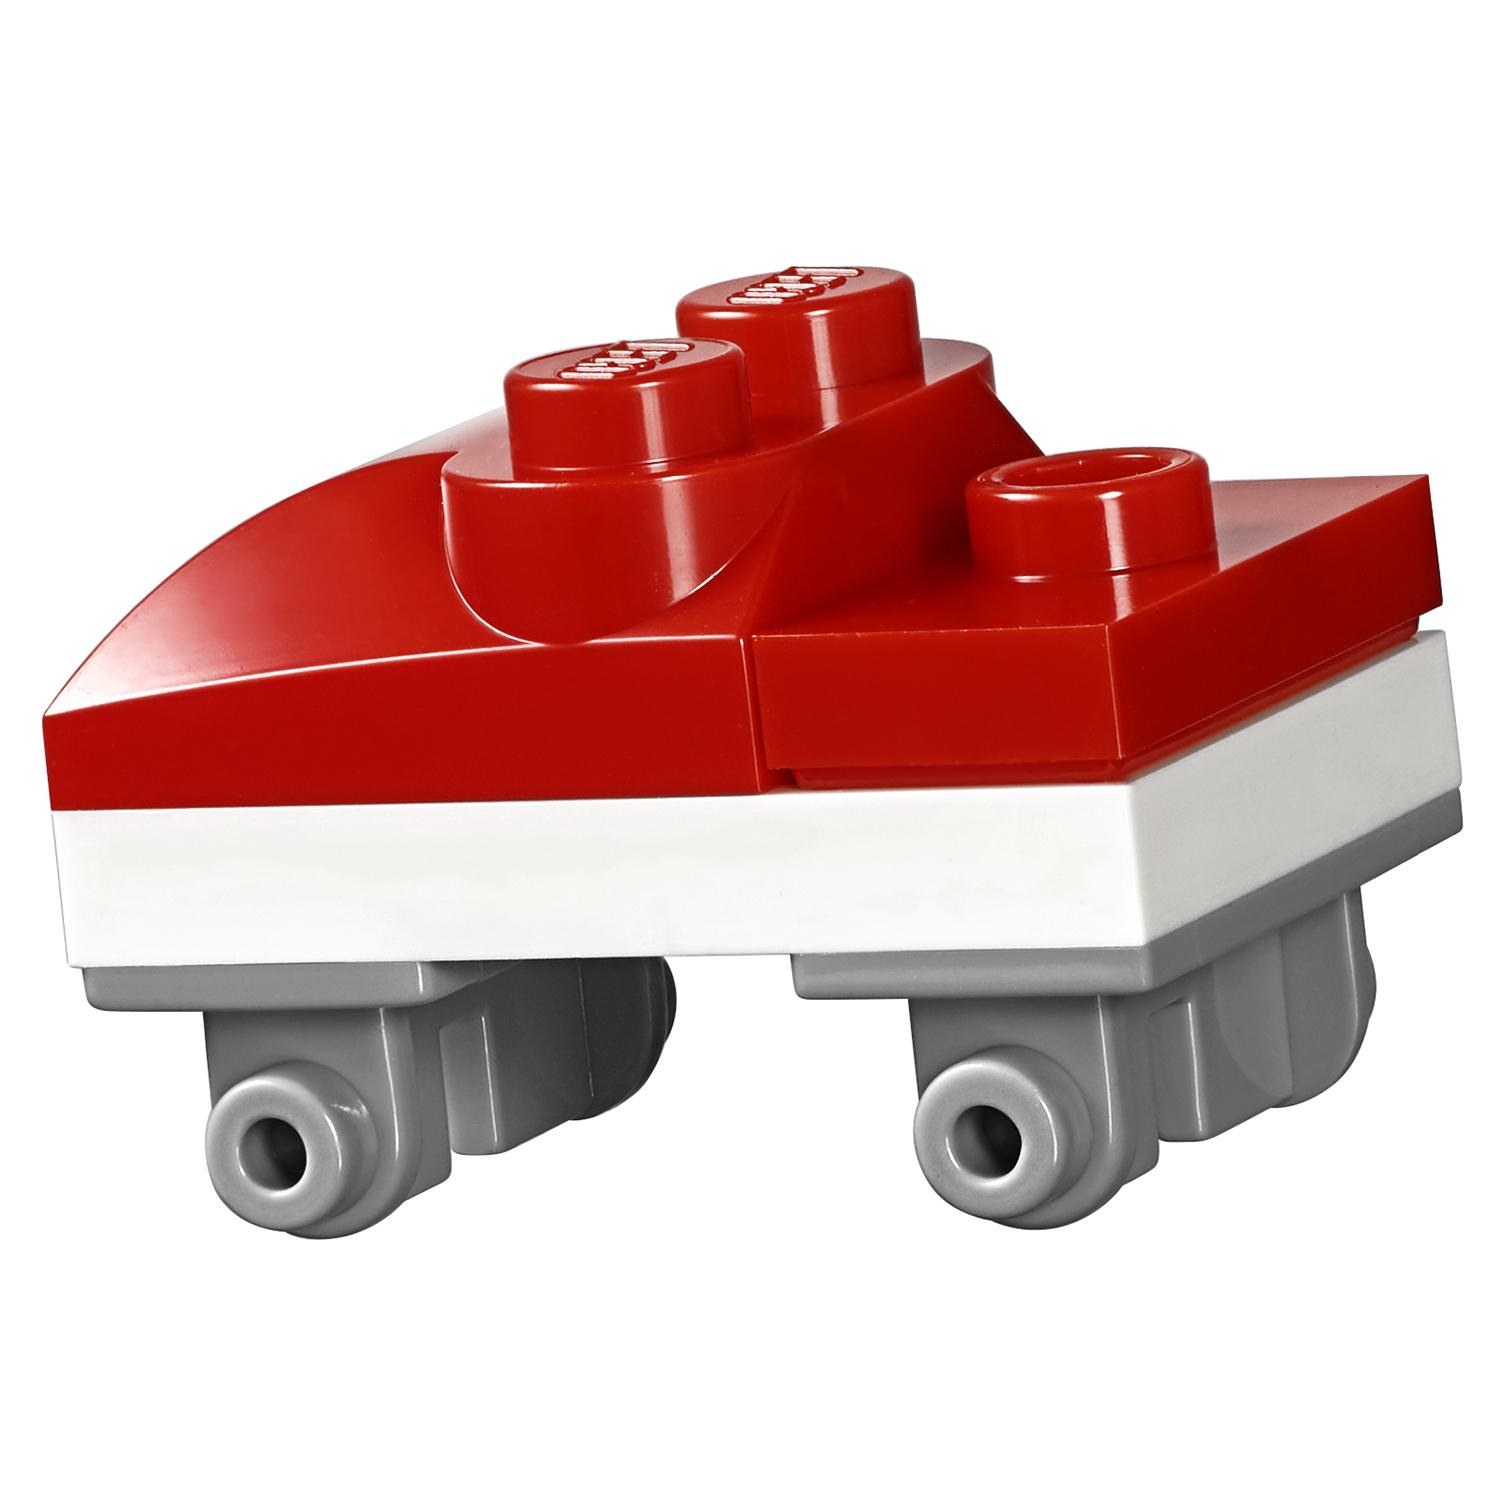 Конструктор LEGO Friends - Игровая площадка для хомячка Оливии